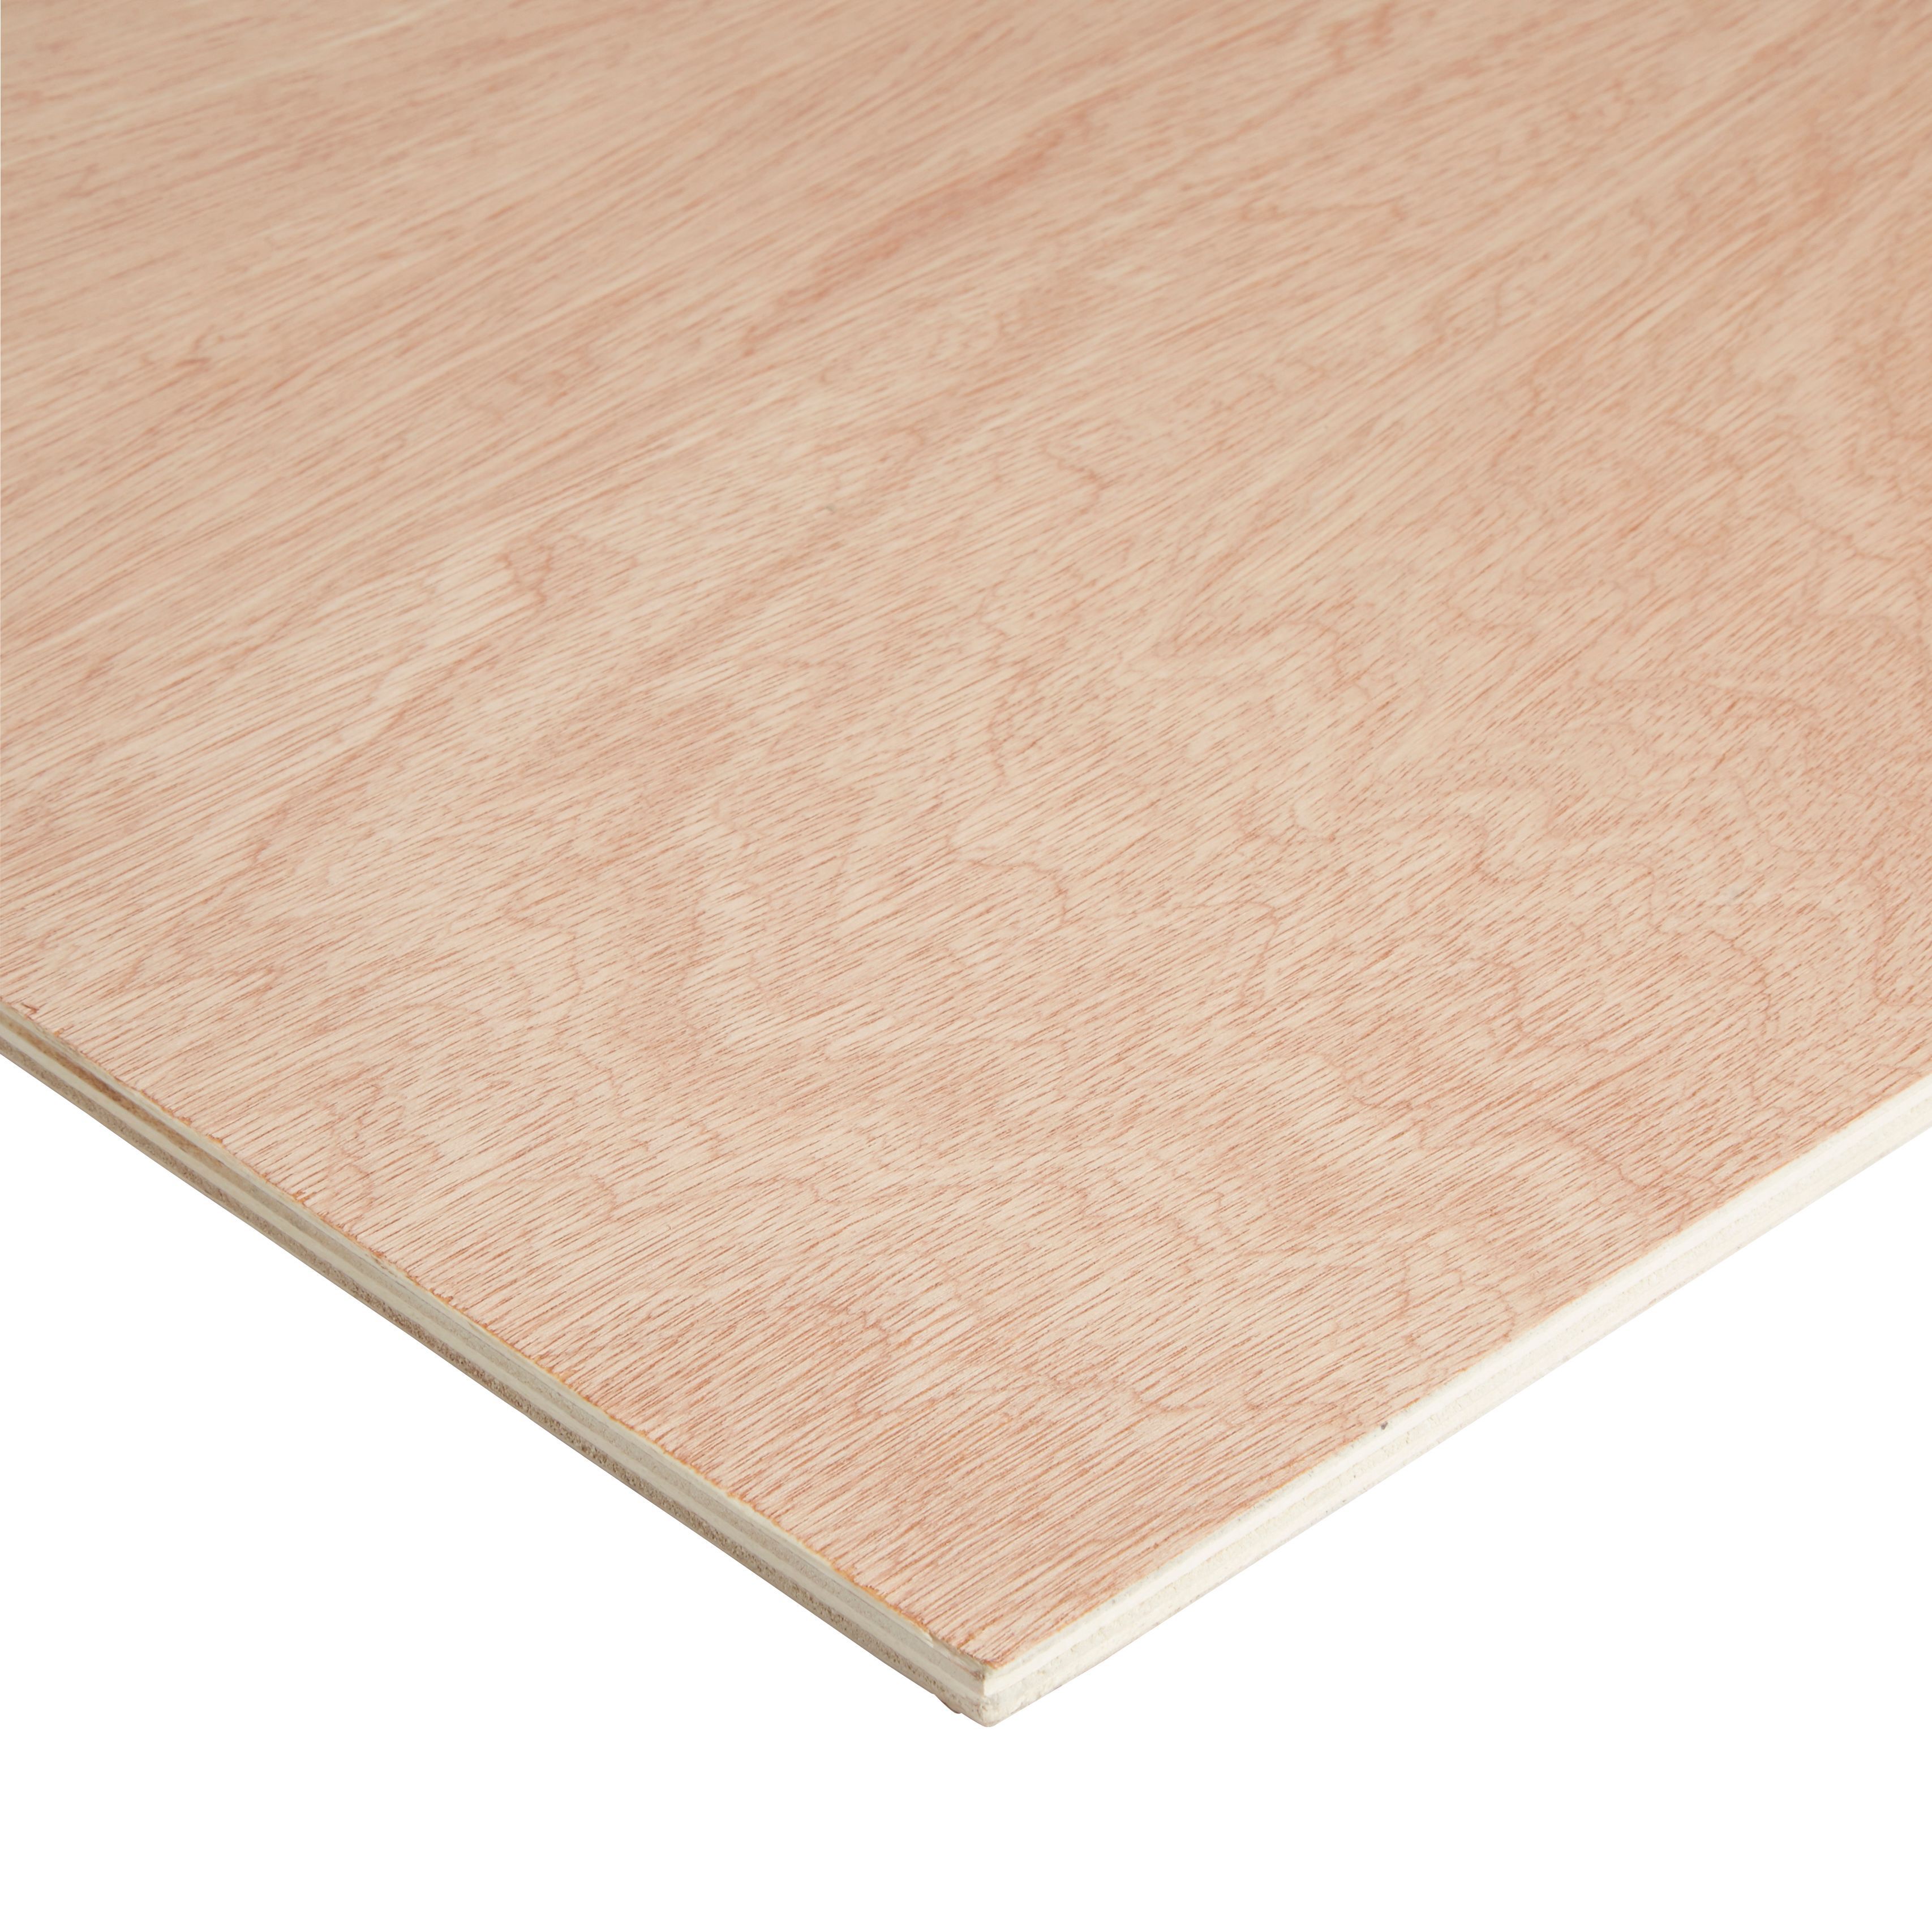 Hardwood Plywood Board (L)1.83m (W)0.61m (T)9mm 5000g